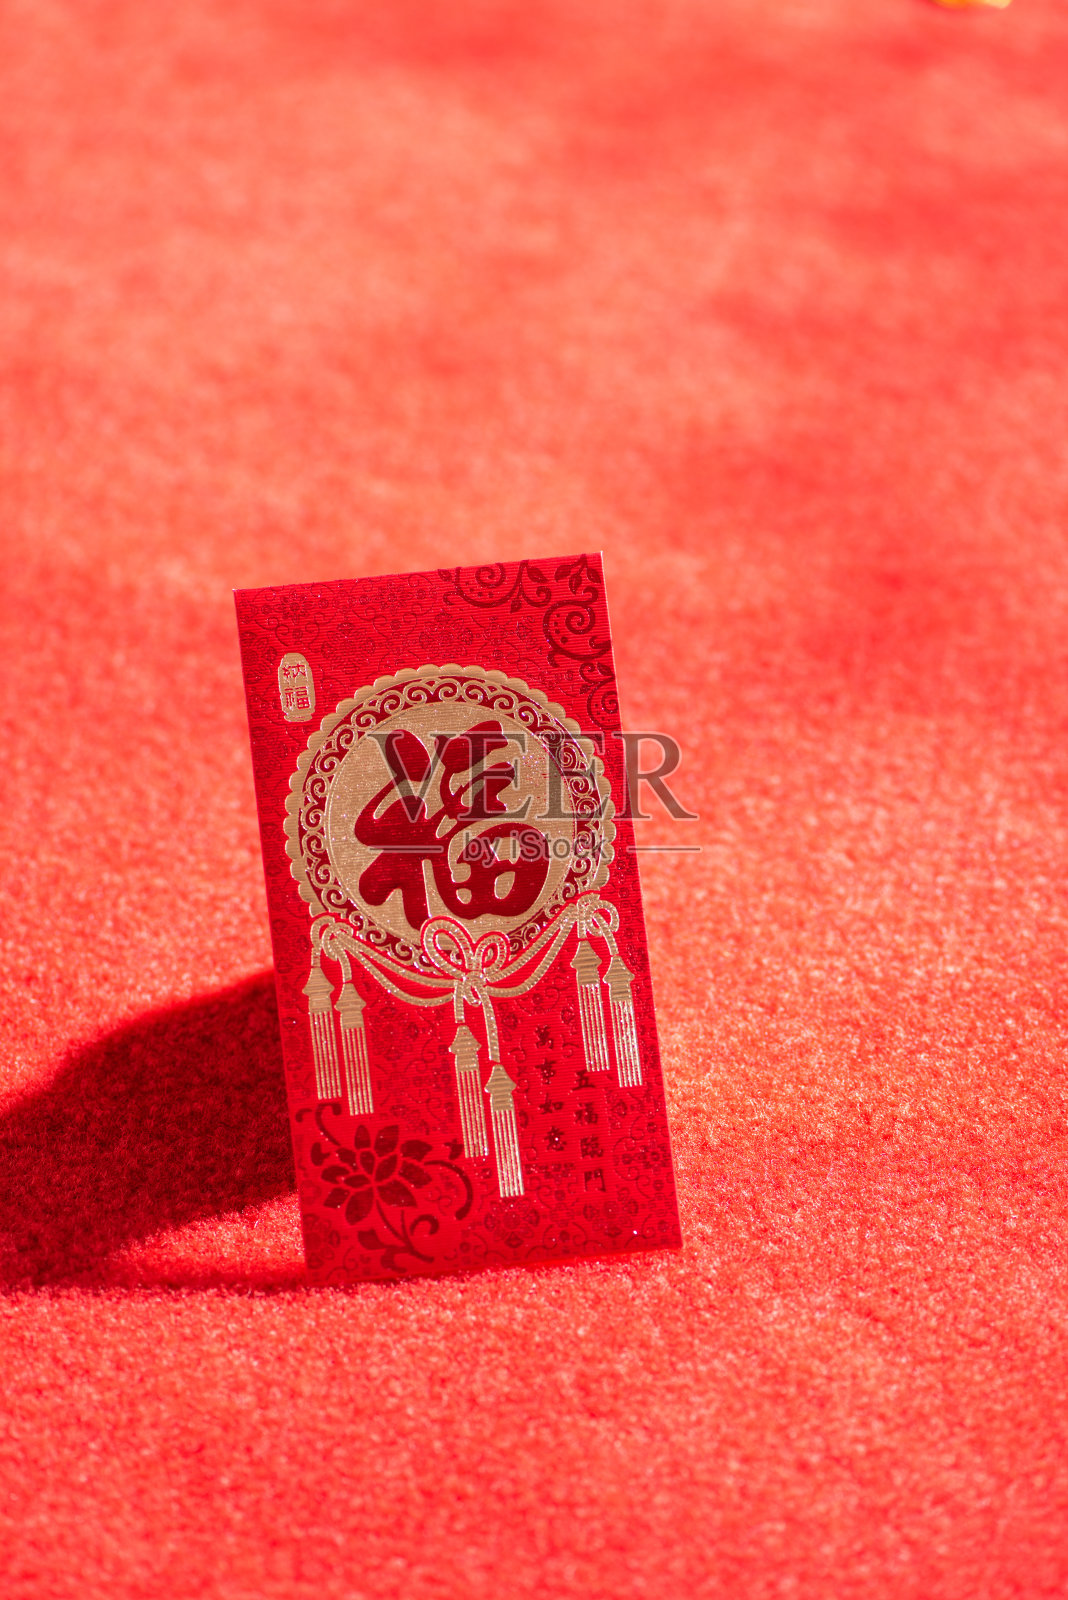 中国春节红包的背景照片摄影图片